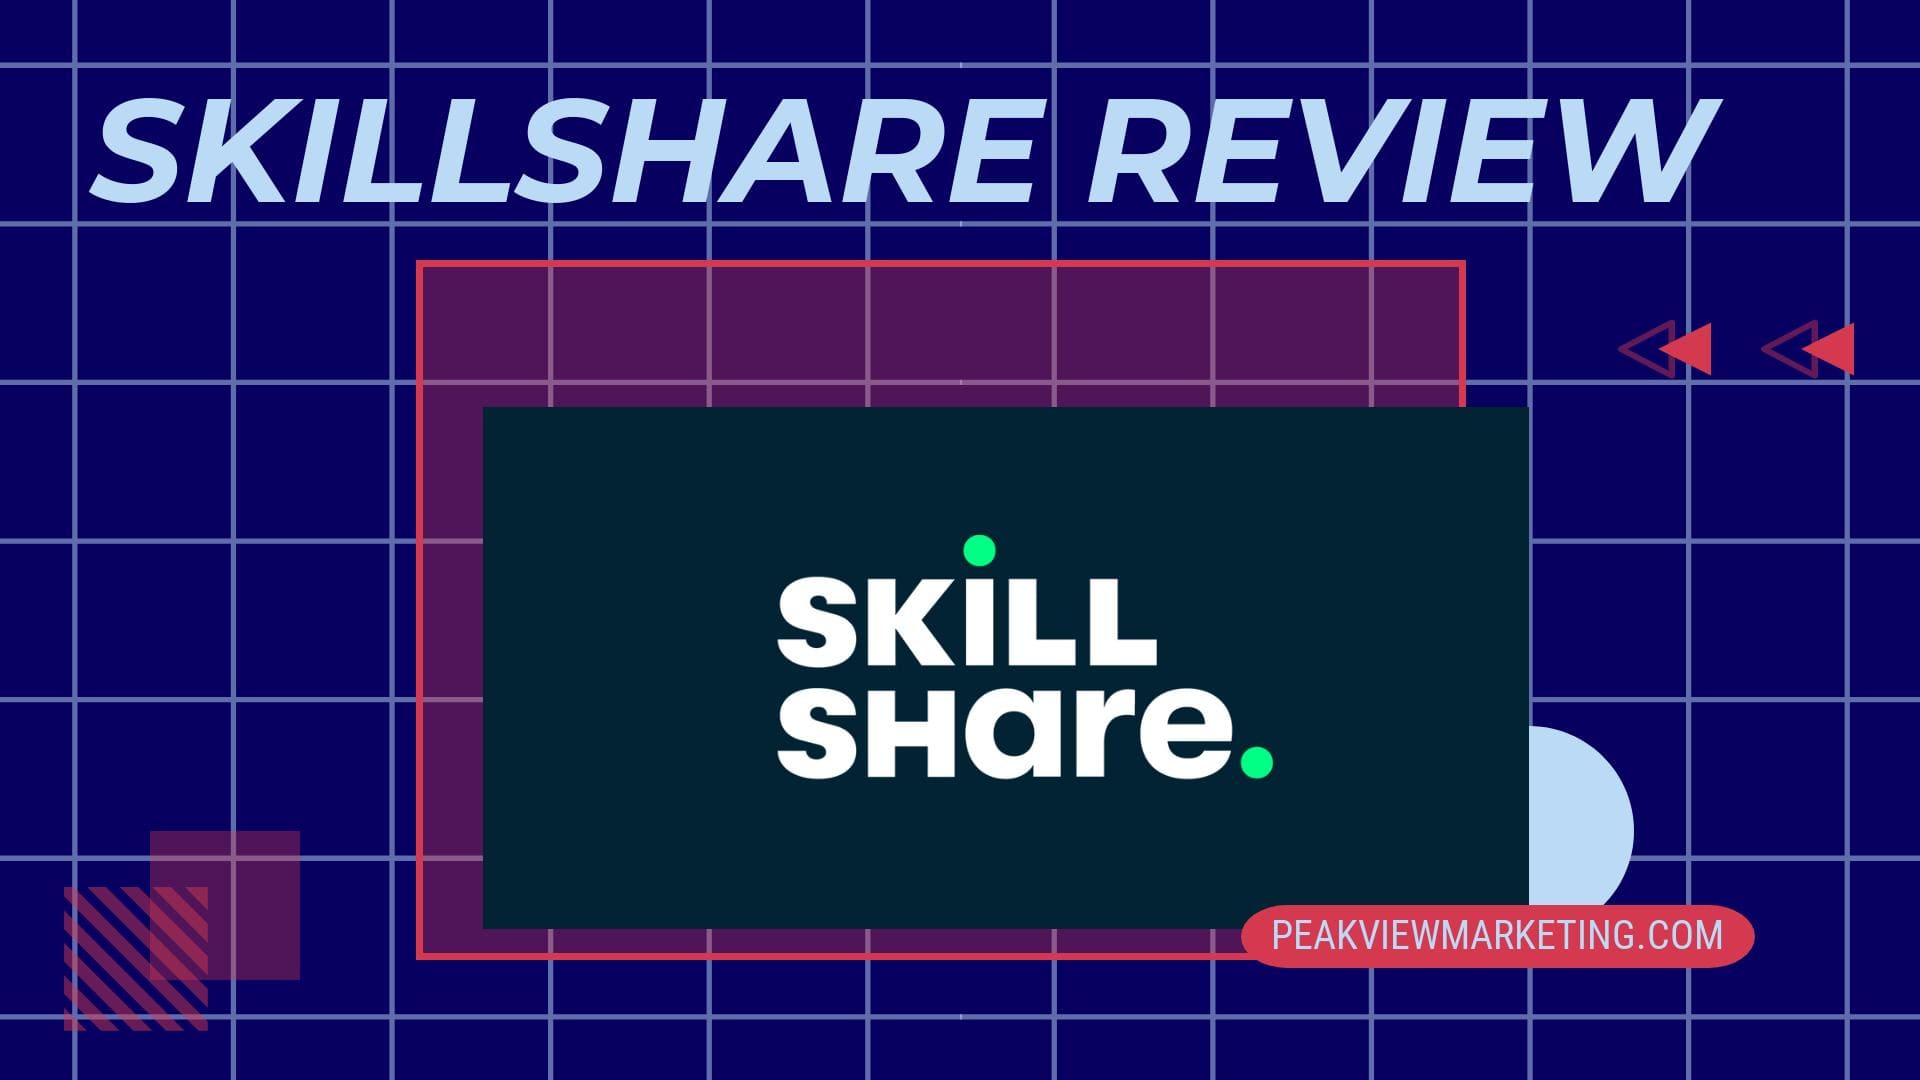 Skillshare Review Image